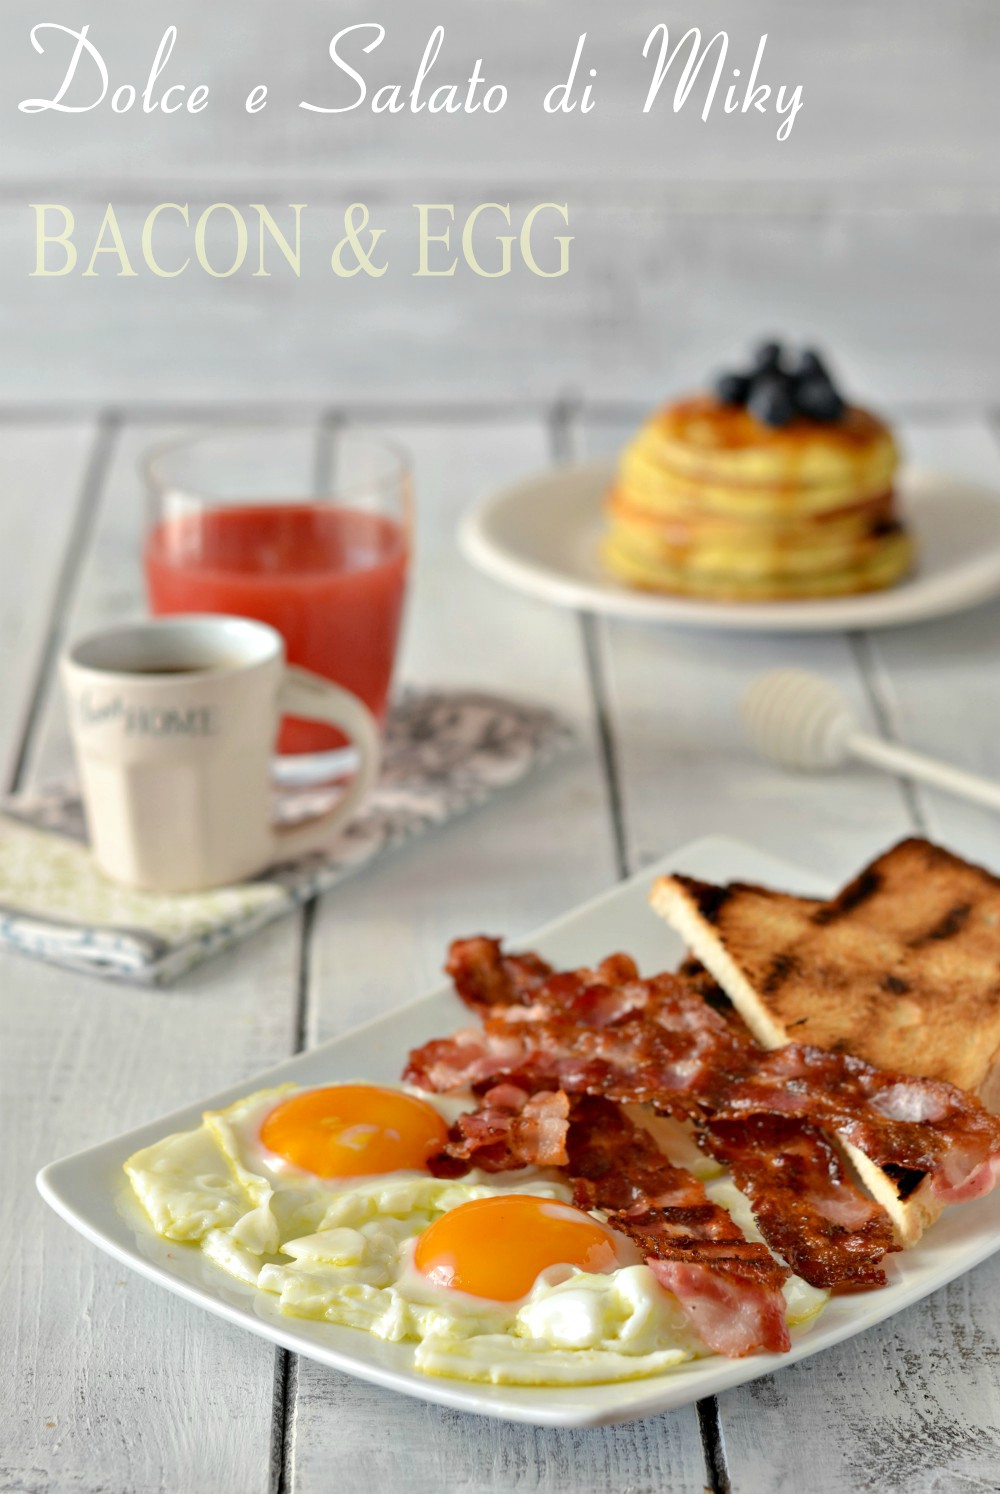 Bacon & egg